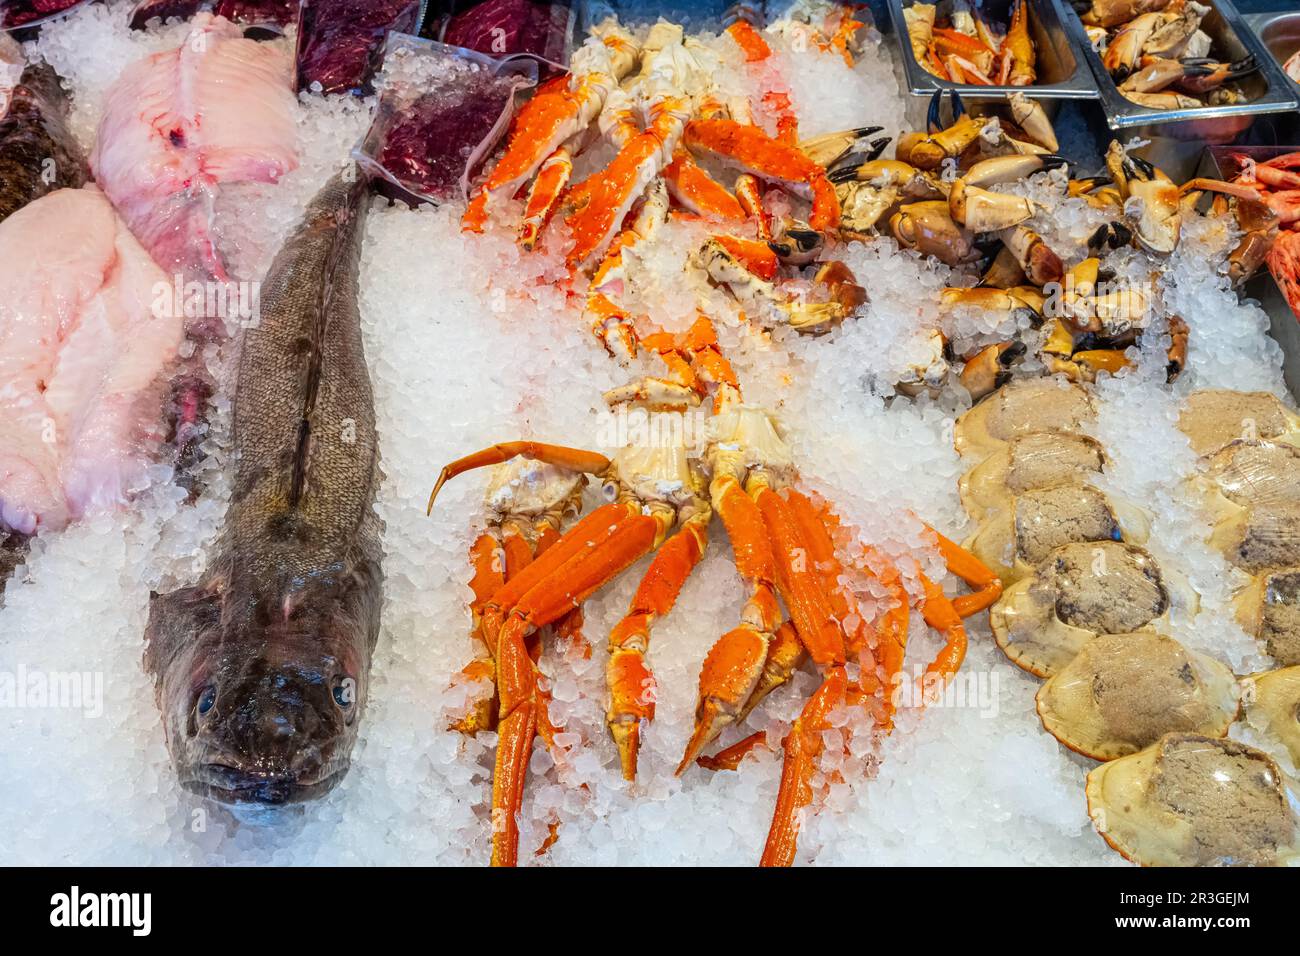 Poissons, crustacés et fruits de mer en vente sur un marché de Bergen, Norvège Banque D'Images